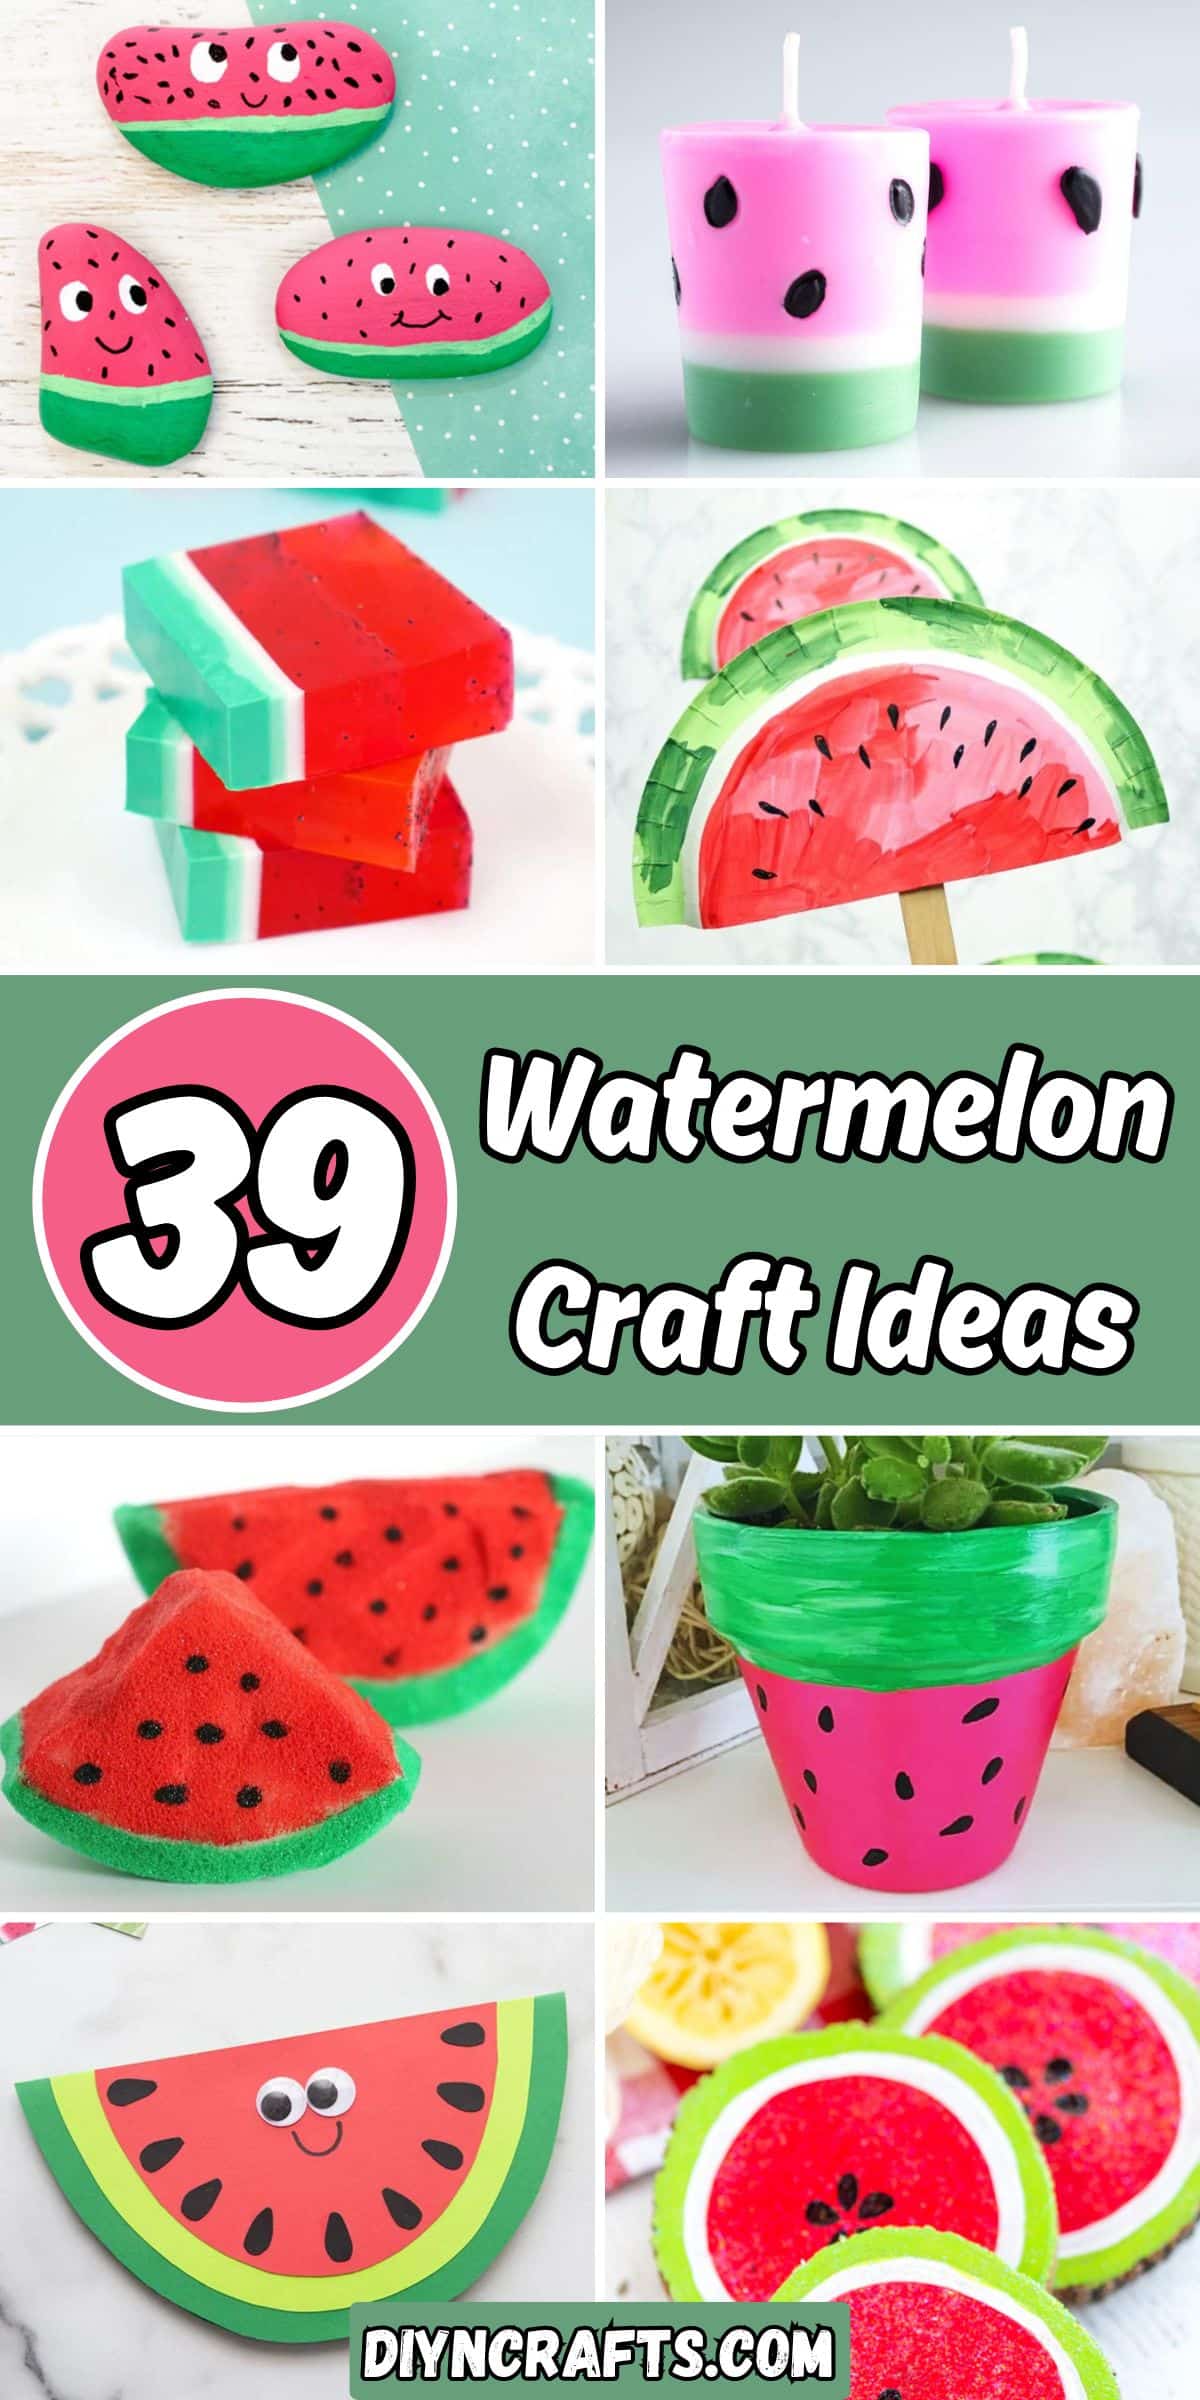 39 Watermelon Craft Ideas collage.